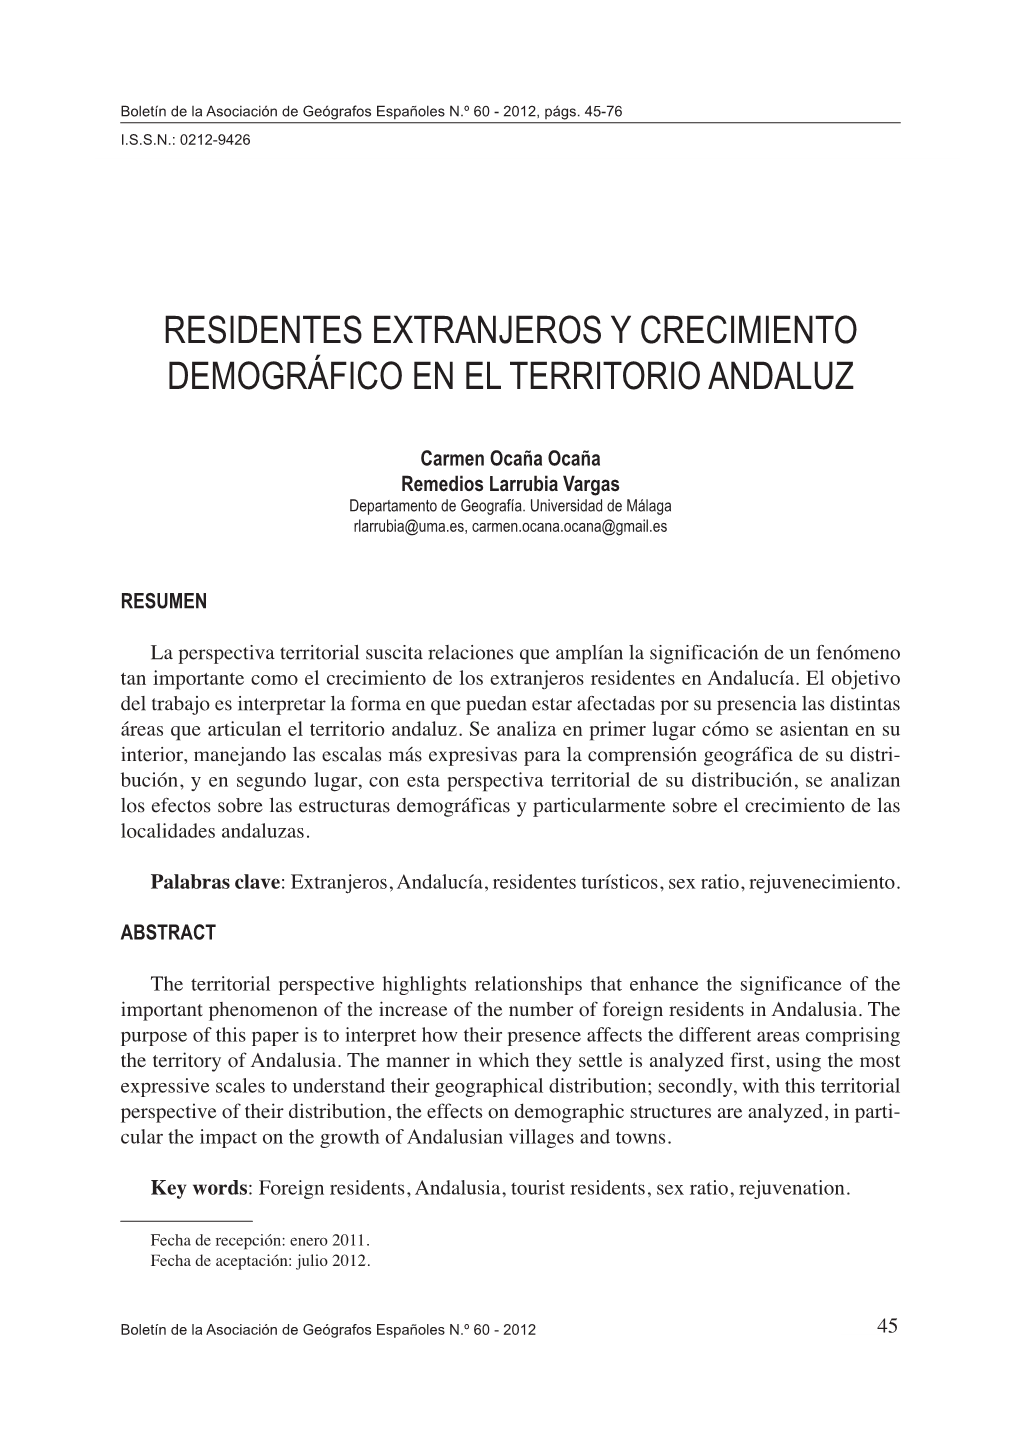 Residentes Extranjeros Y Crecimiento Demográfico En El Territorio Andaluz